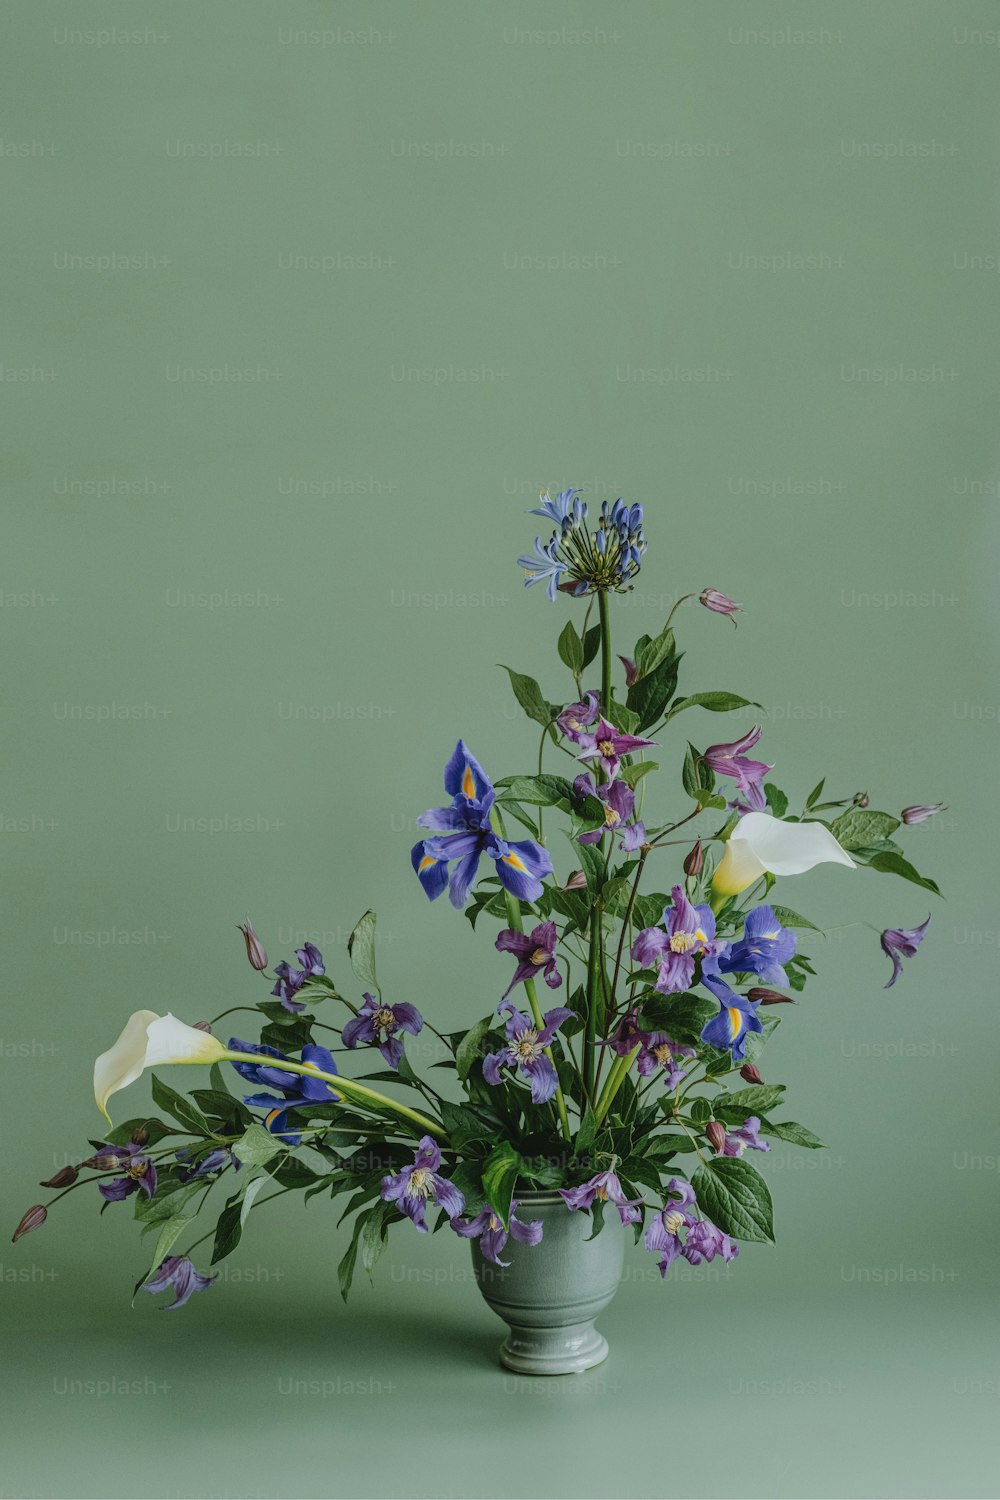 un vase rempli de fleurs violettes et blanches